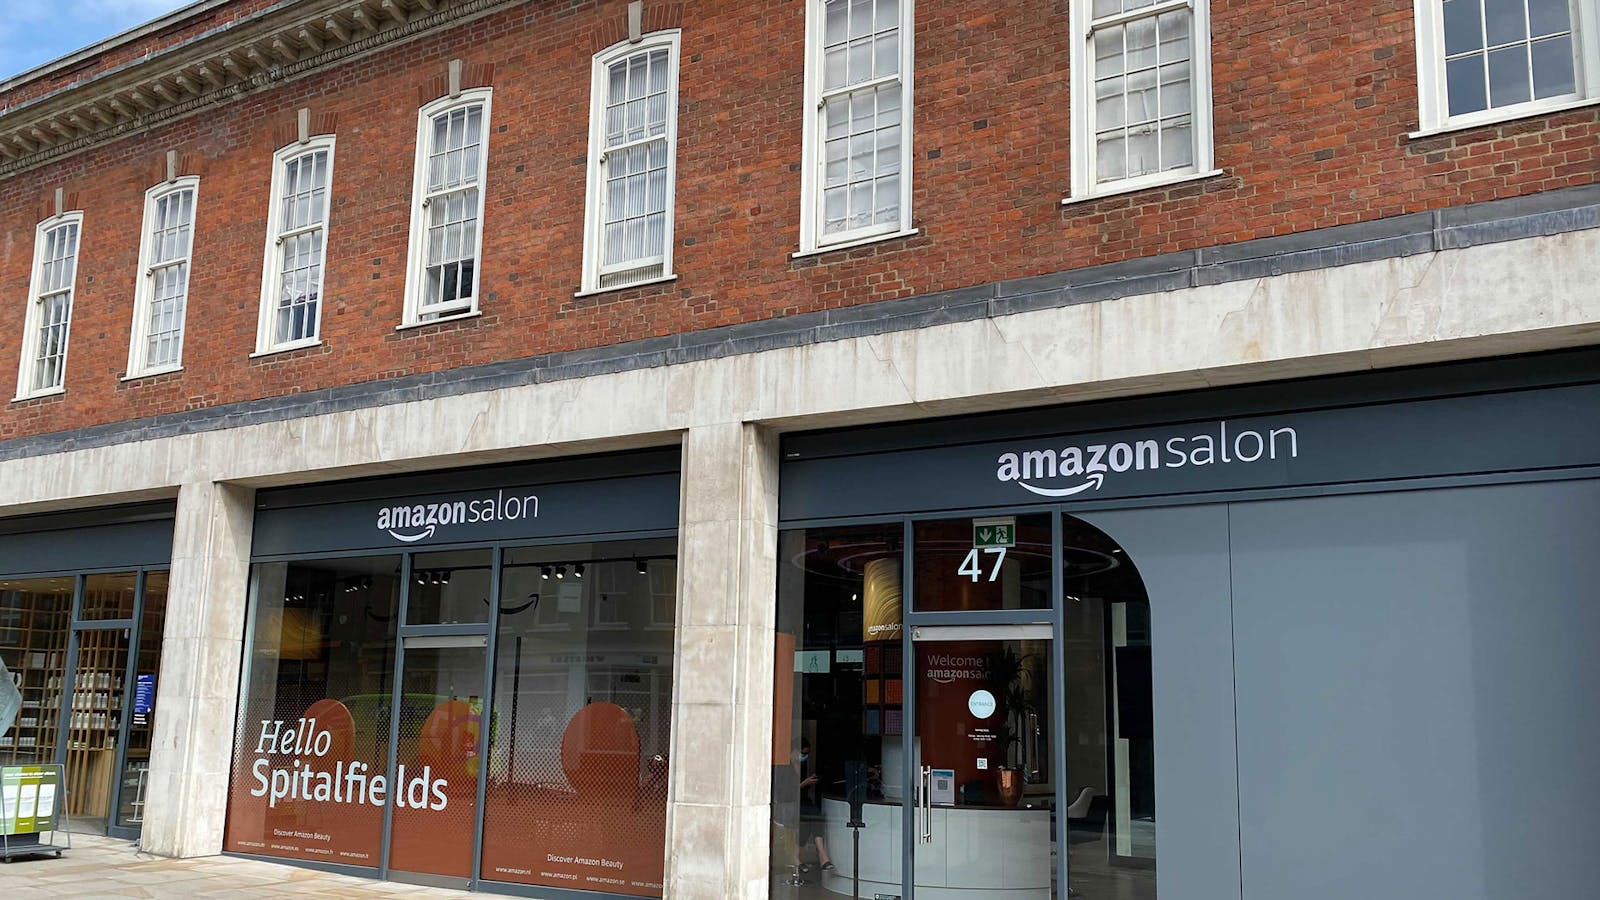 Amazon's hair salon in London. Photo by Mark Di Stefano